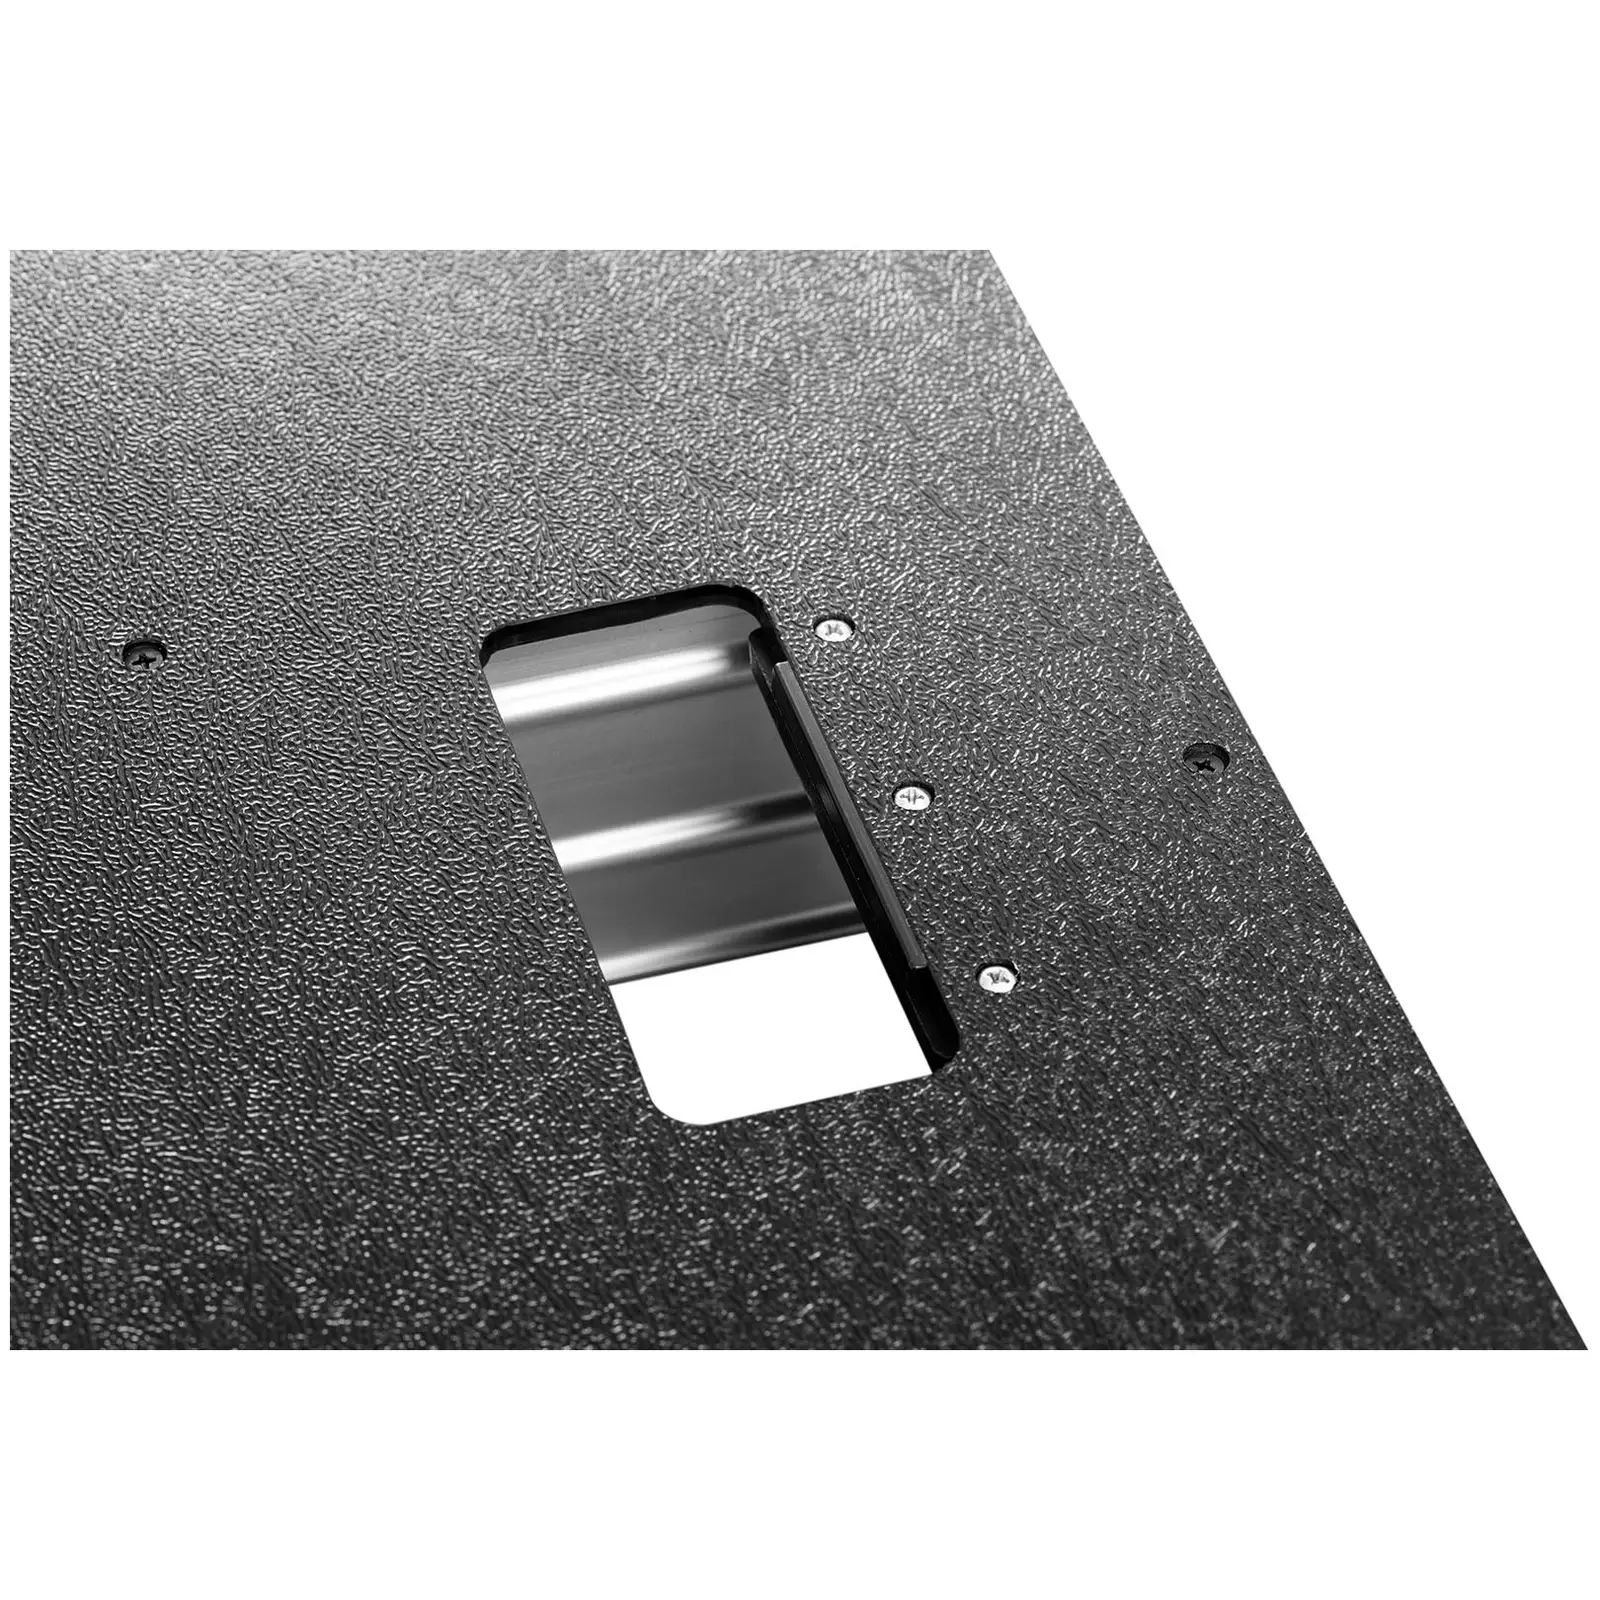 Guilhotina para painéis de vinil e laminados - manual - espessura: 16 mm - corte em ângulo 490 mm - rodas